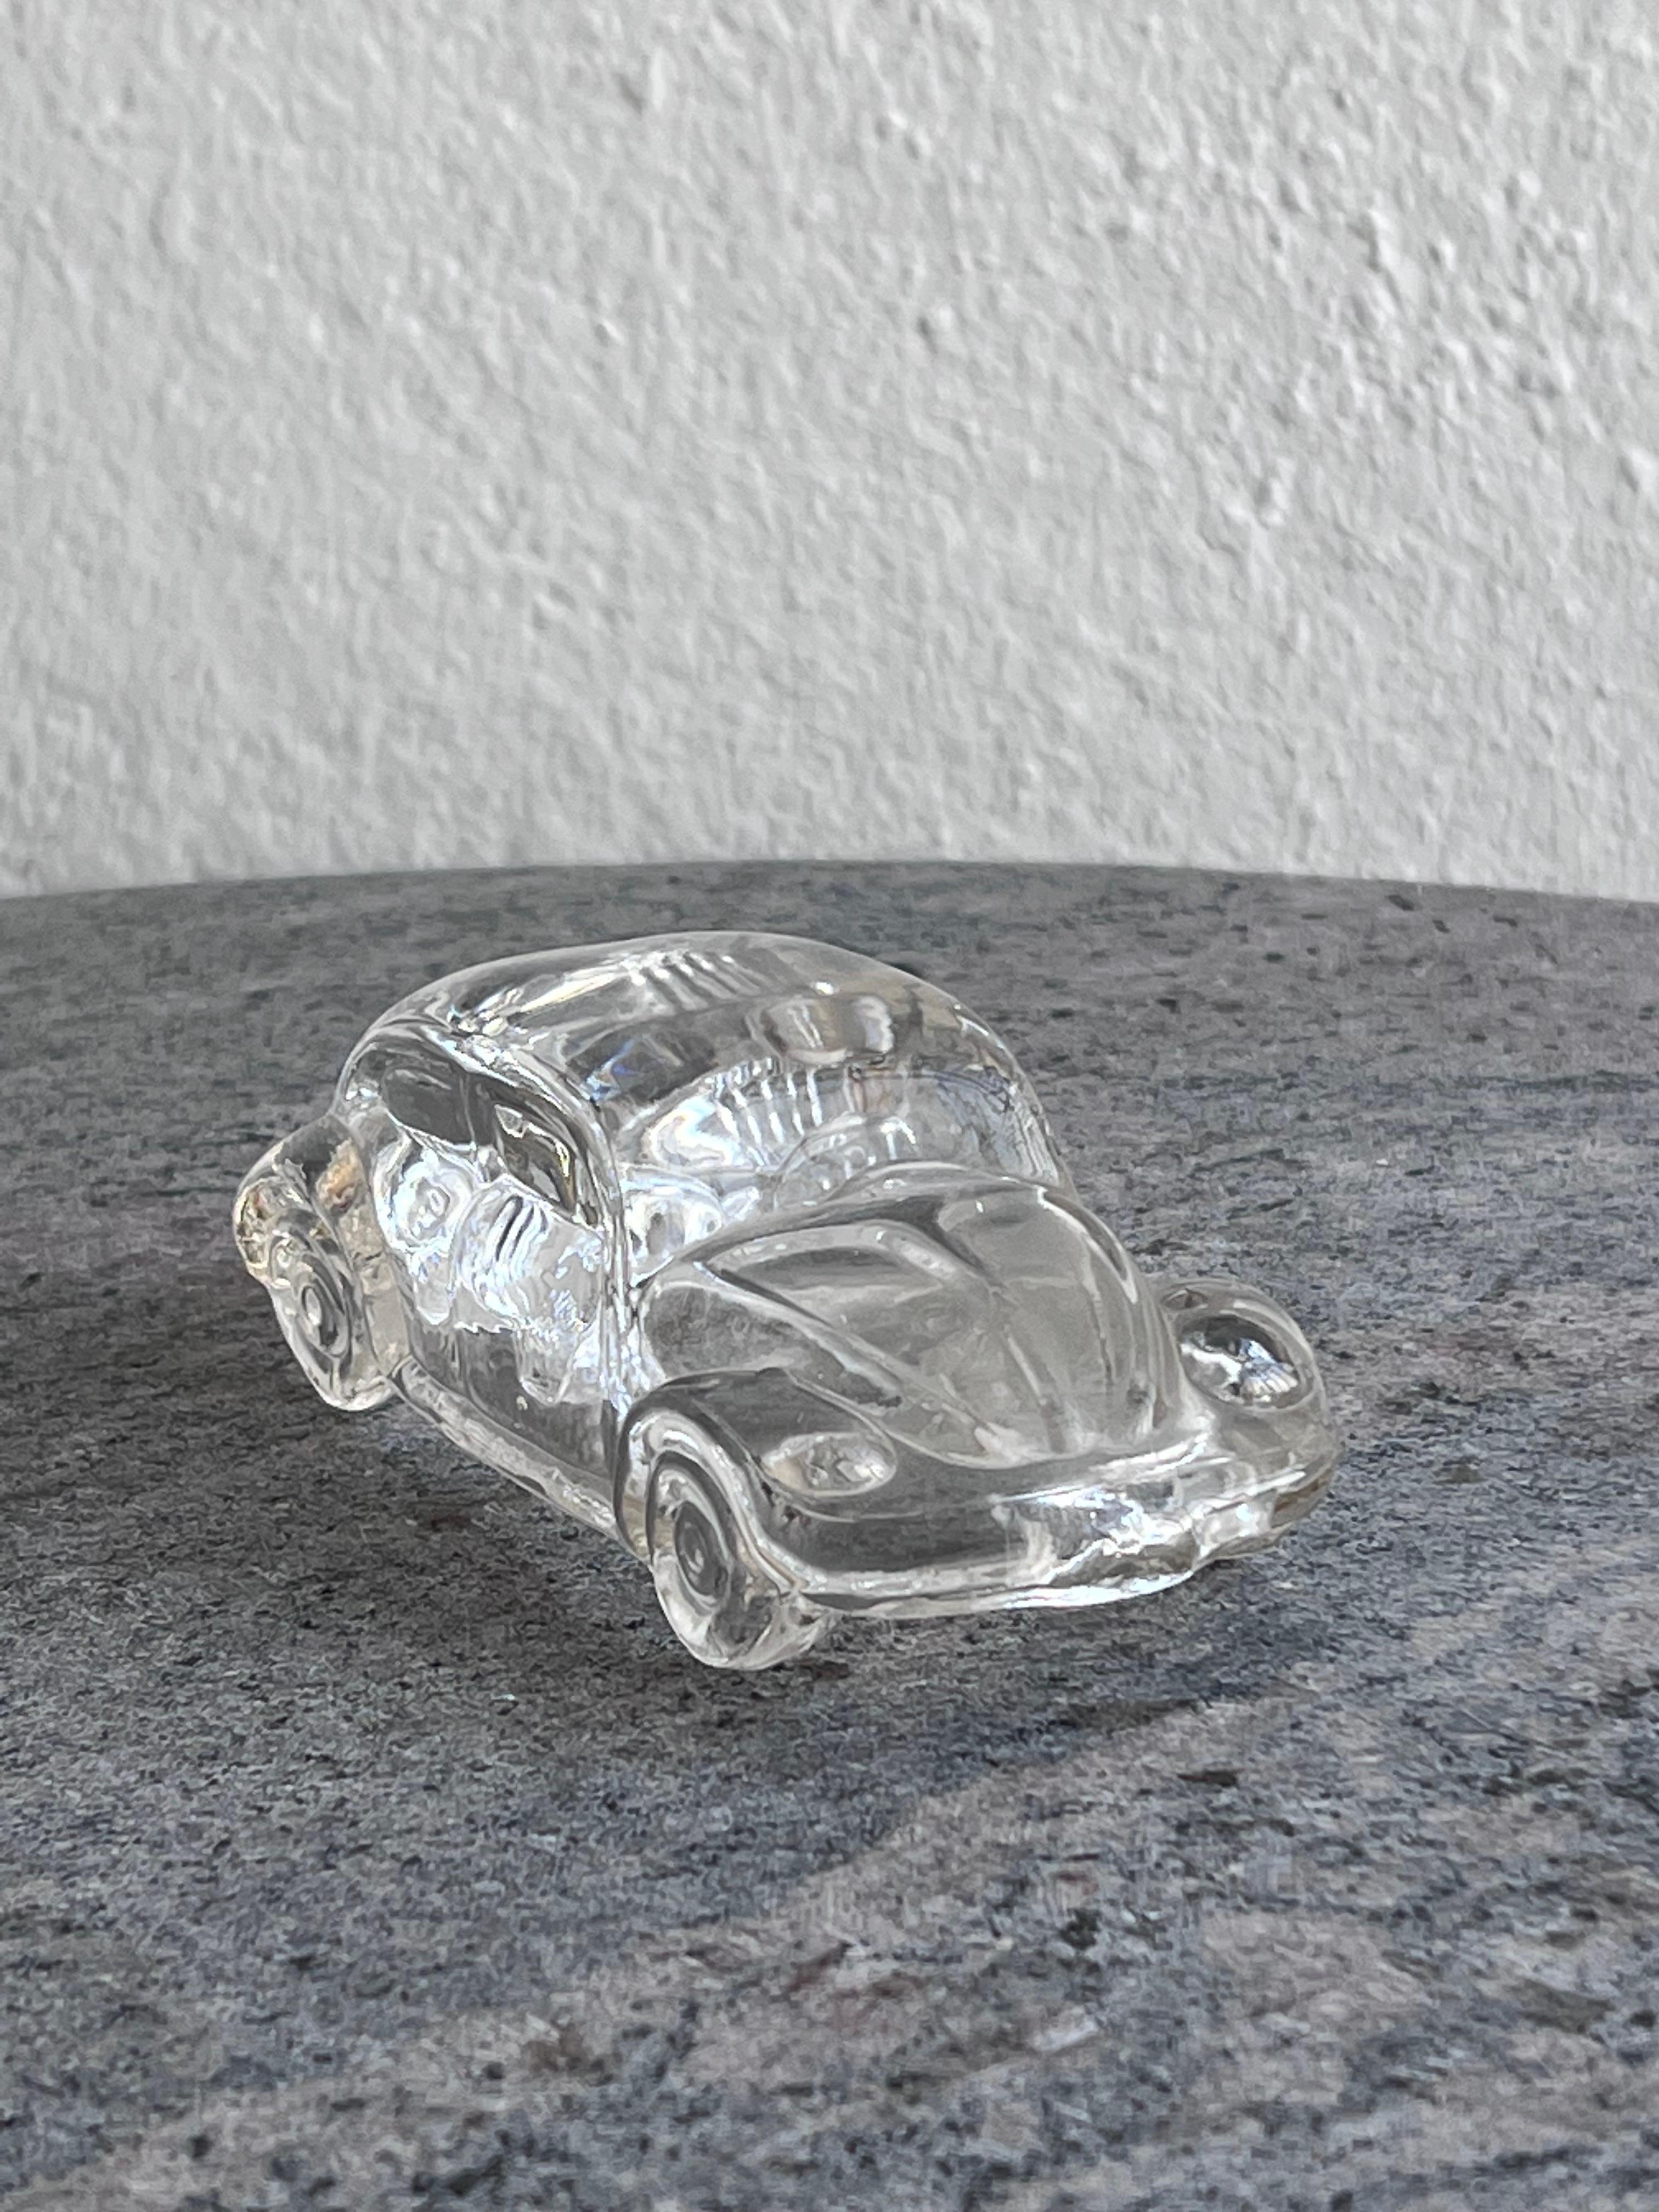 Kleines, aber realistisches Miniaturmodell eines klassischen Volkswagen Käfers - höchstwahrscheinlich eine Version aus den späten 1970er/frühen 1980er Jahren. Sie besteht aus gepresstem Klarglas und ist reich an Details, die sogar die ikonische